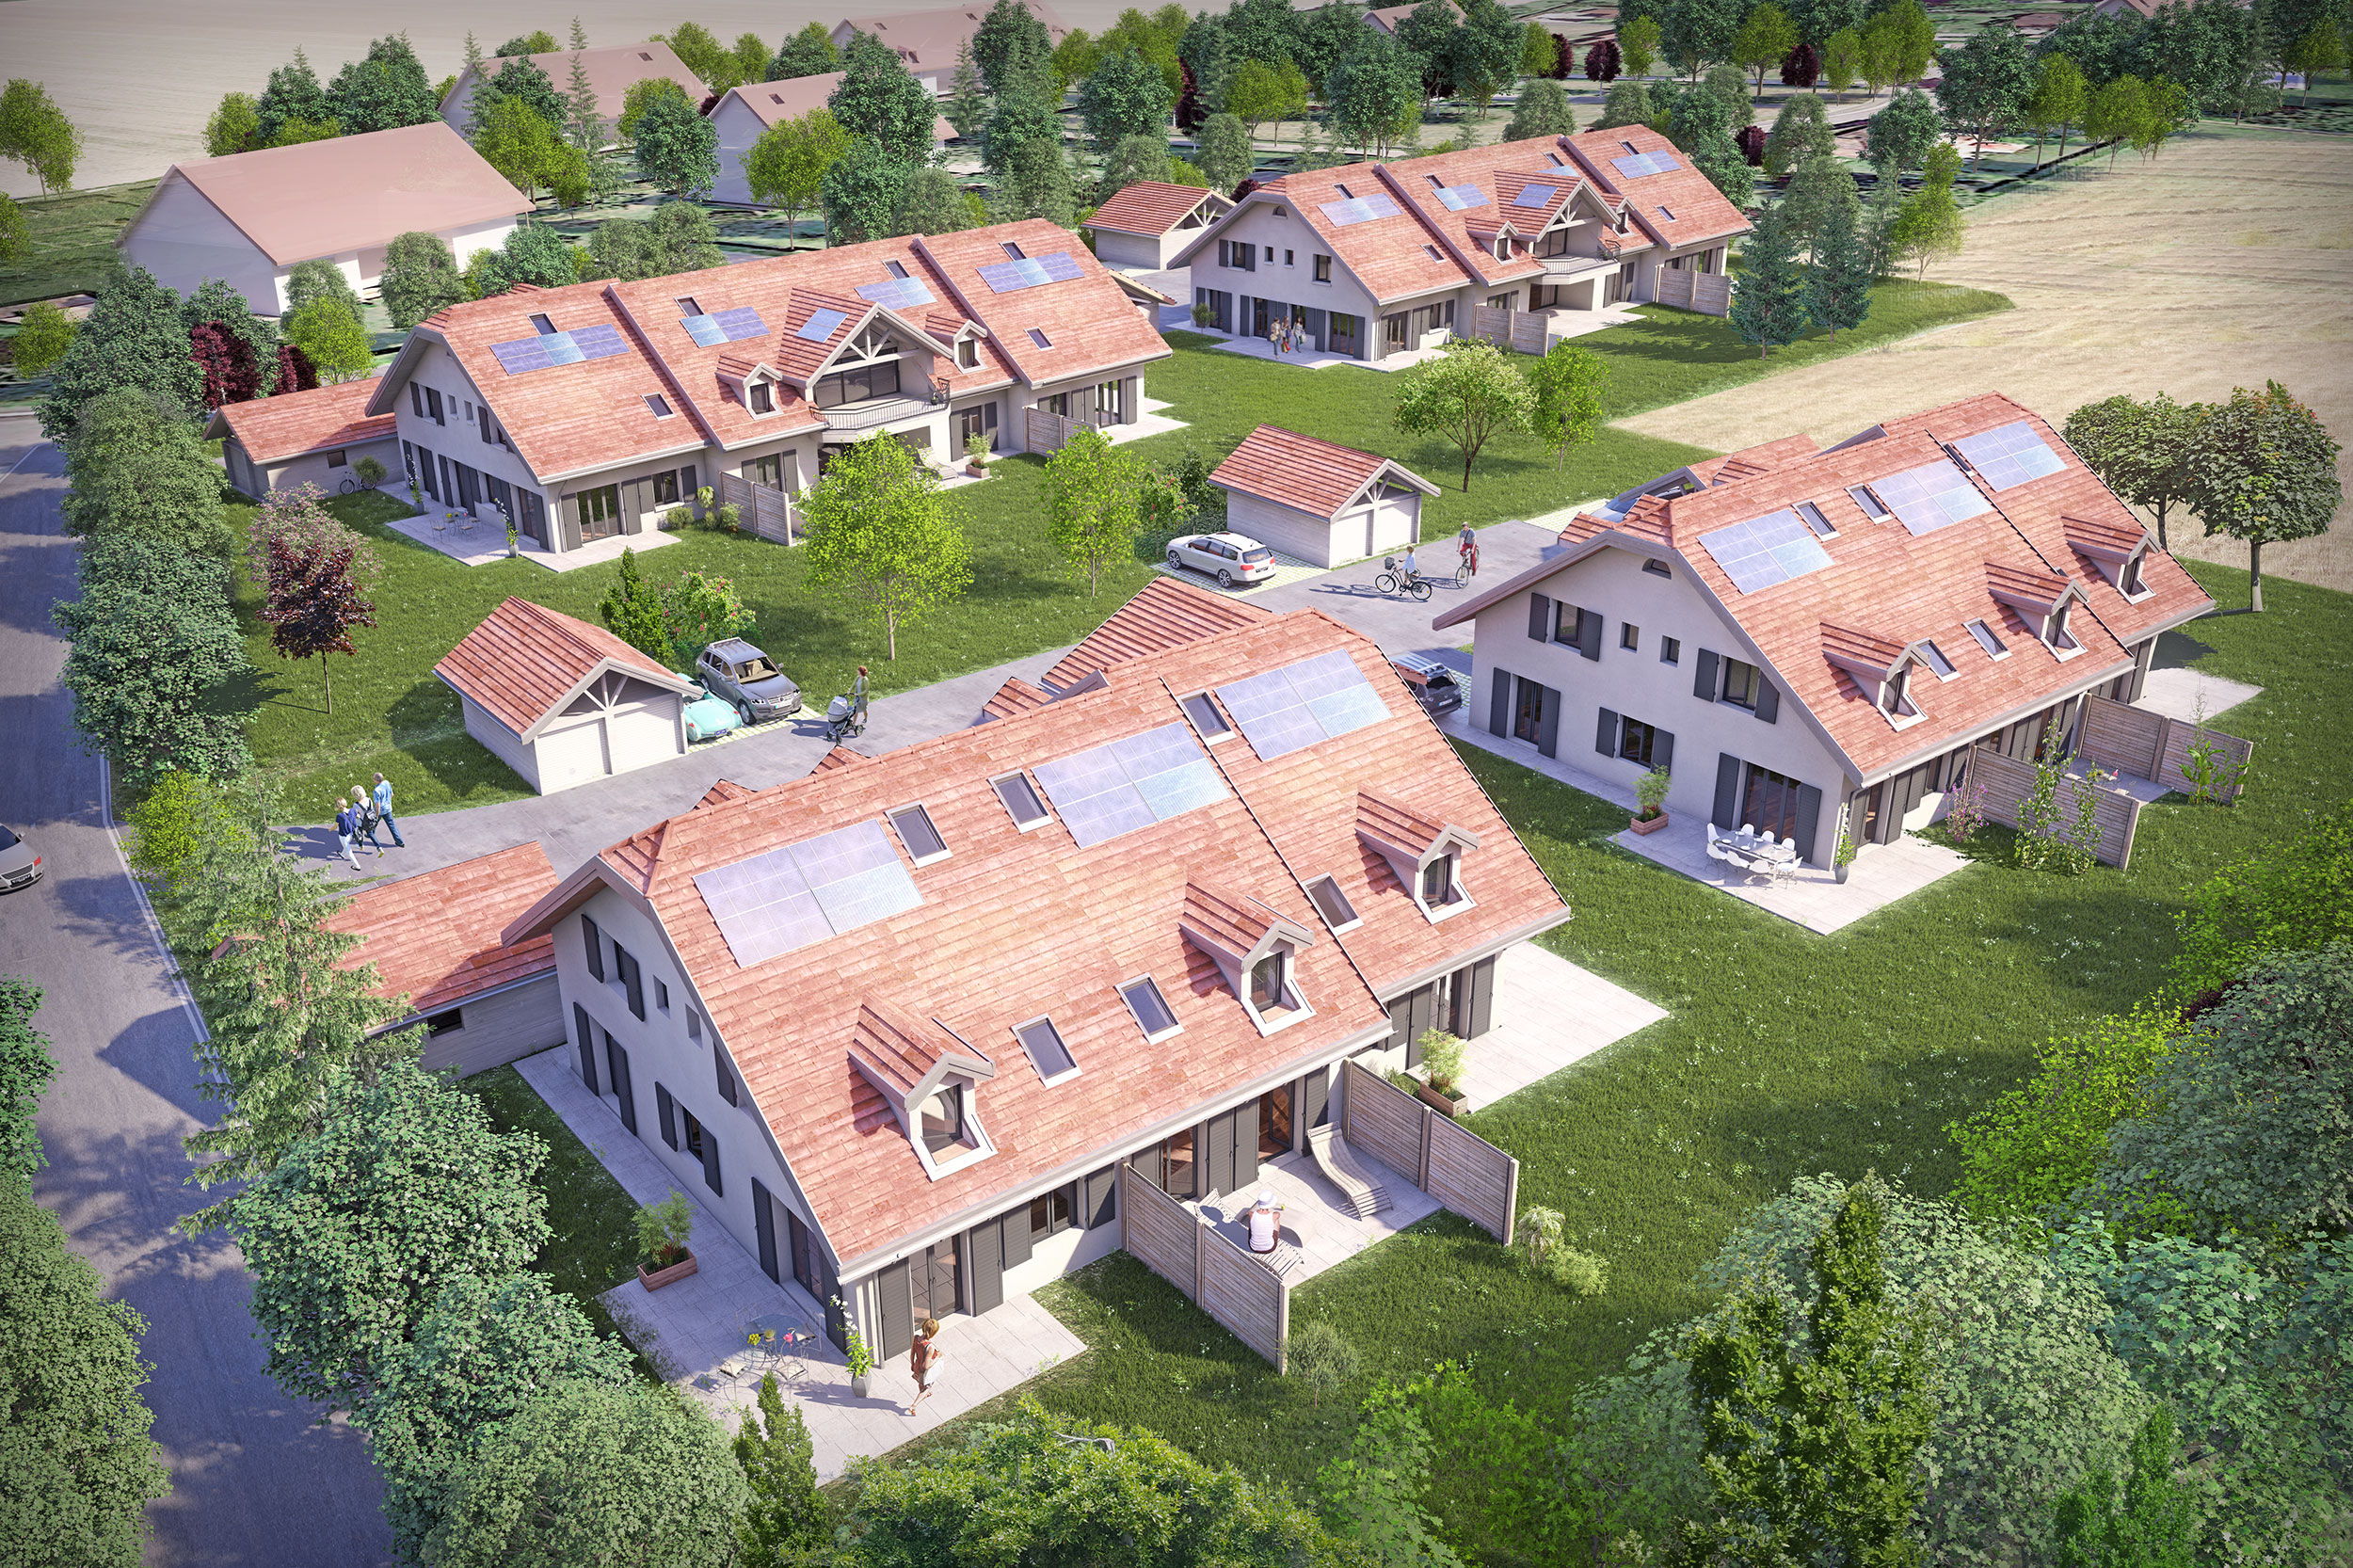 Illustration en perspective 3D d'un ensemble de villas, vue d'ensemble